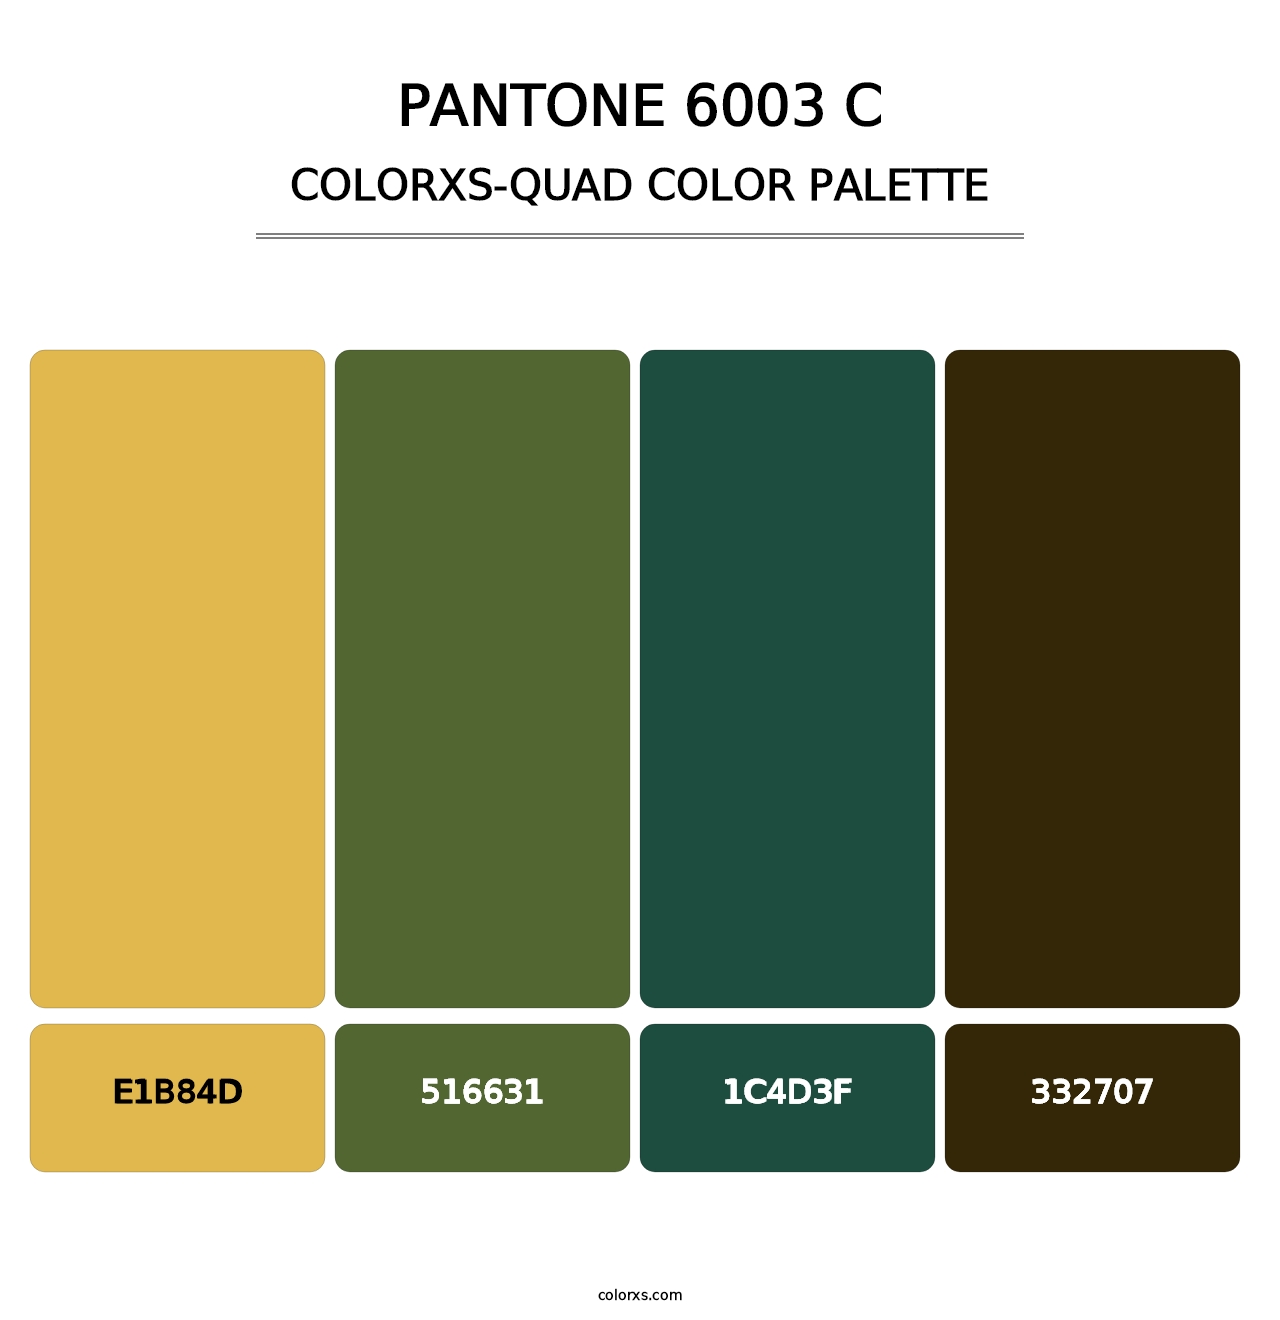 PANTONE 6003 C - Colorxs Quad Palette